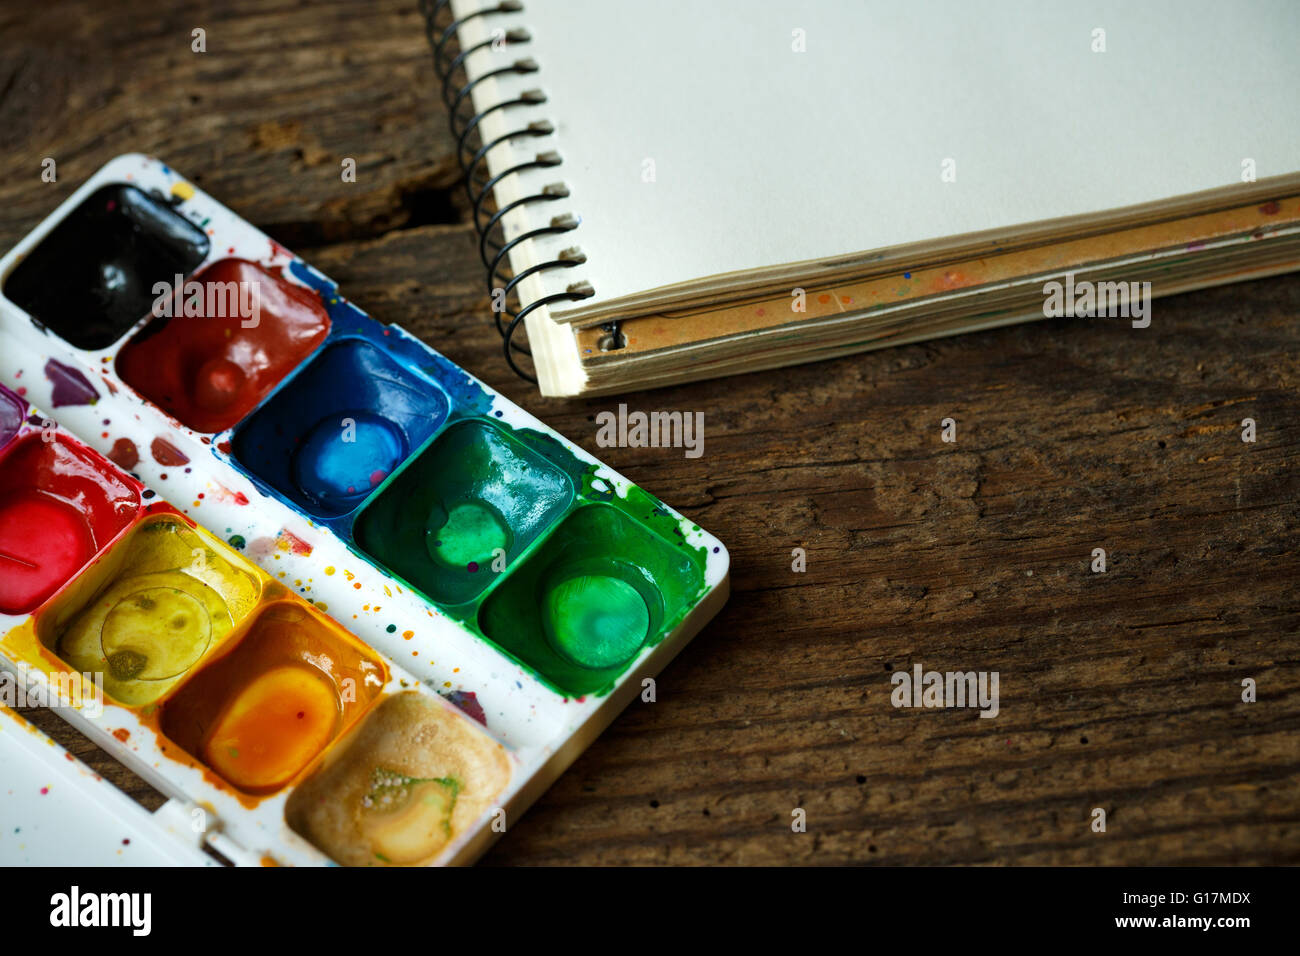 L'arte della pittura. Set di pittura: carta, spazzole, vernici, pastelli, acquerelli, vernice acrilico su uno sfondo di legno Foto Stock